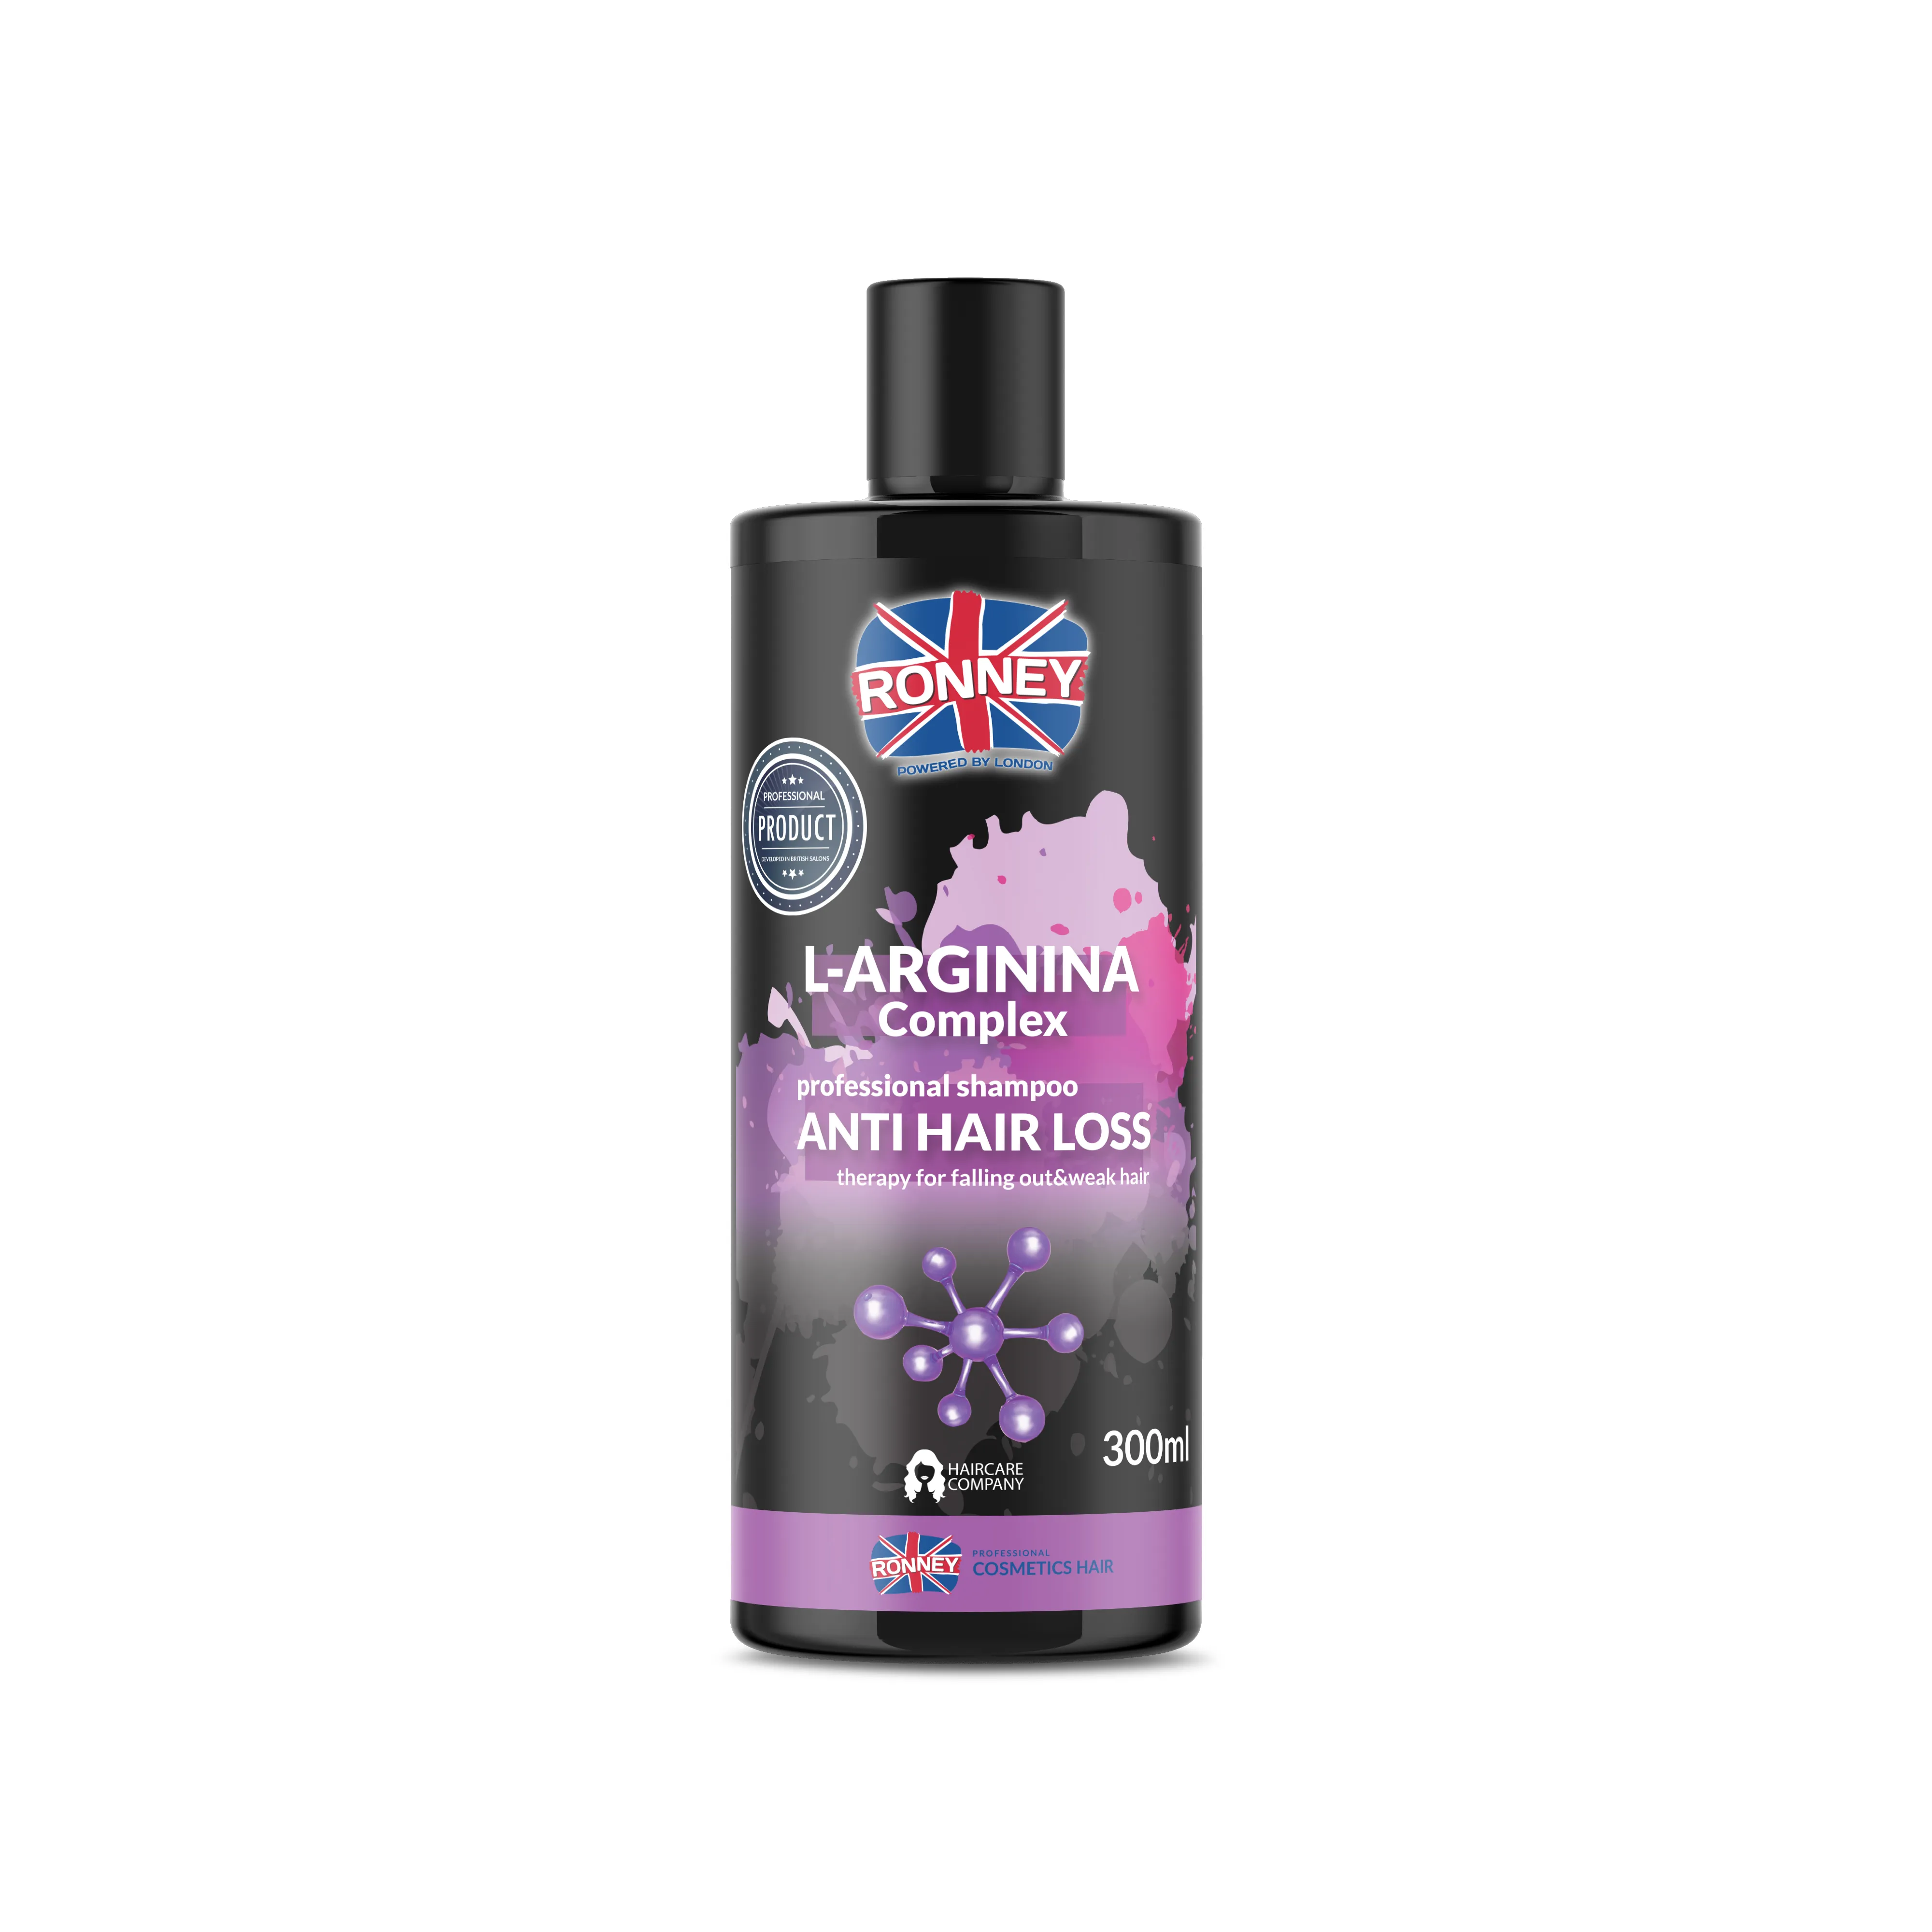 RONNEY Professional Shampoo L-Arginina Complex Anti Hair Loss Therapy szampon przeciwko wypadaniu włosów, 300 ml